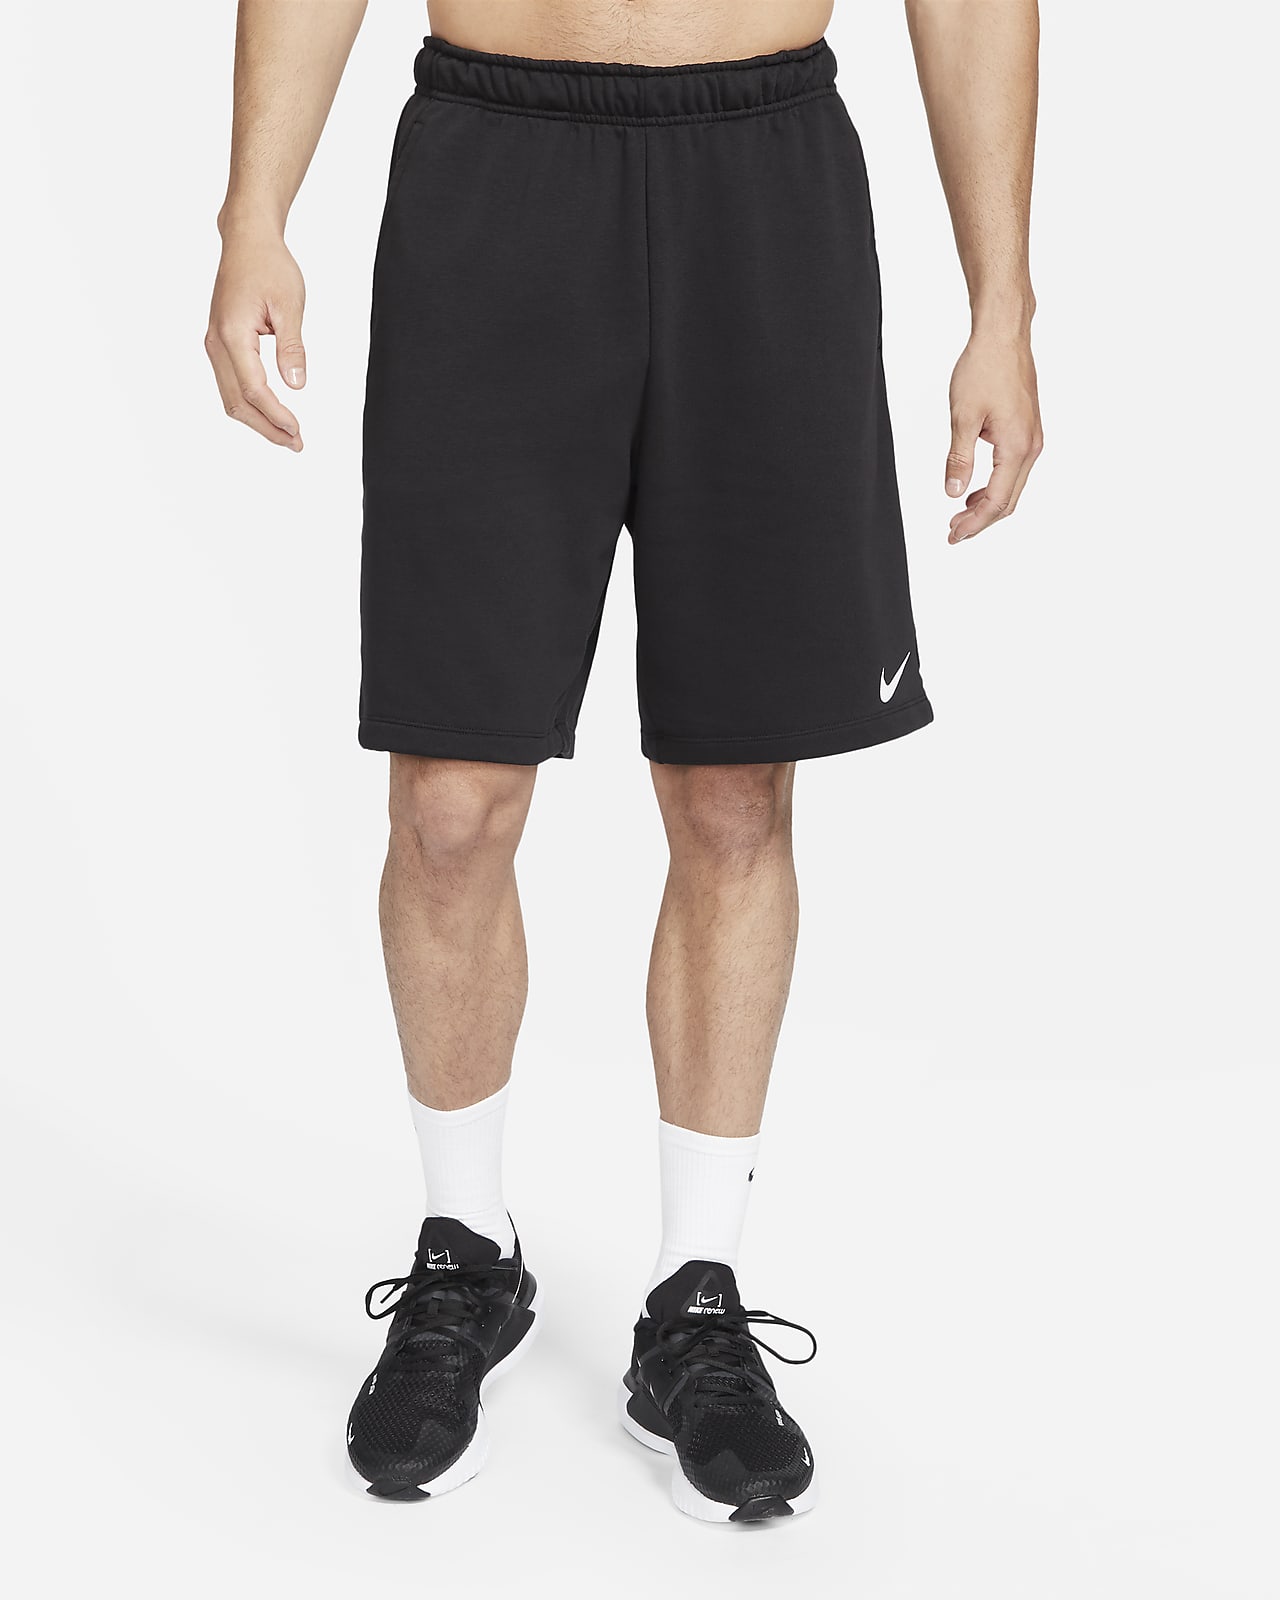 nike men's workout shorts